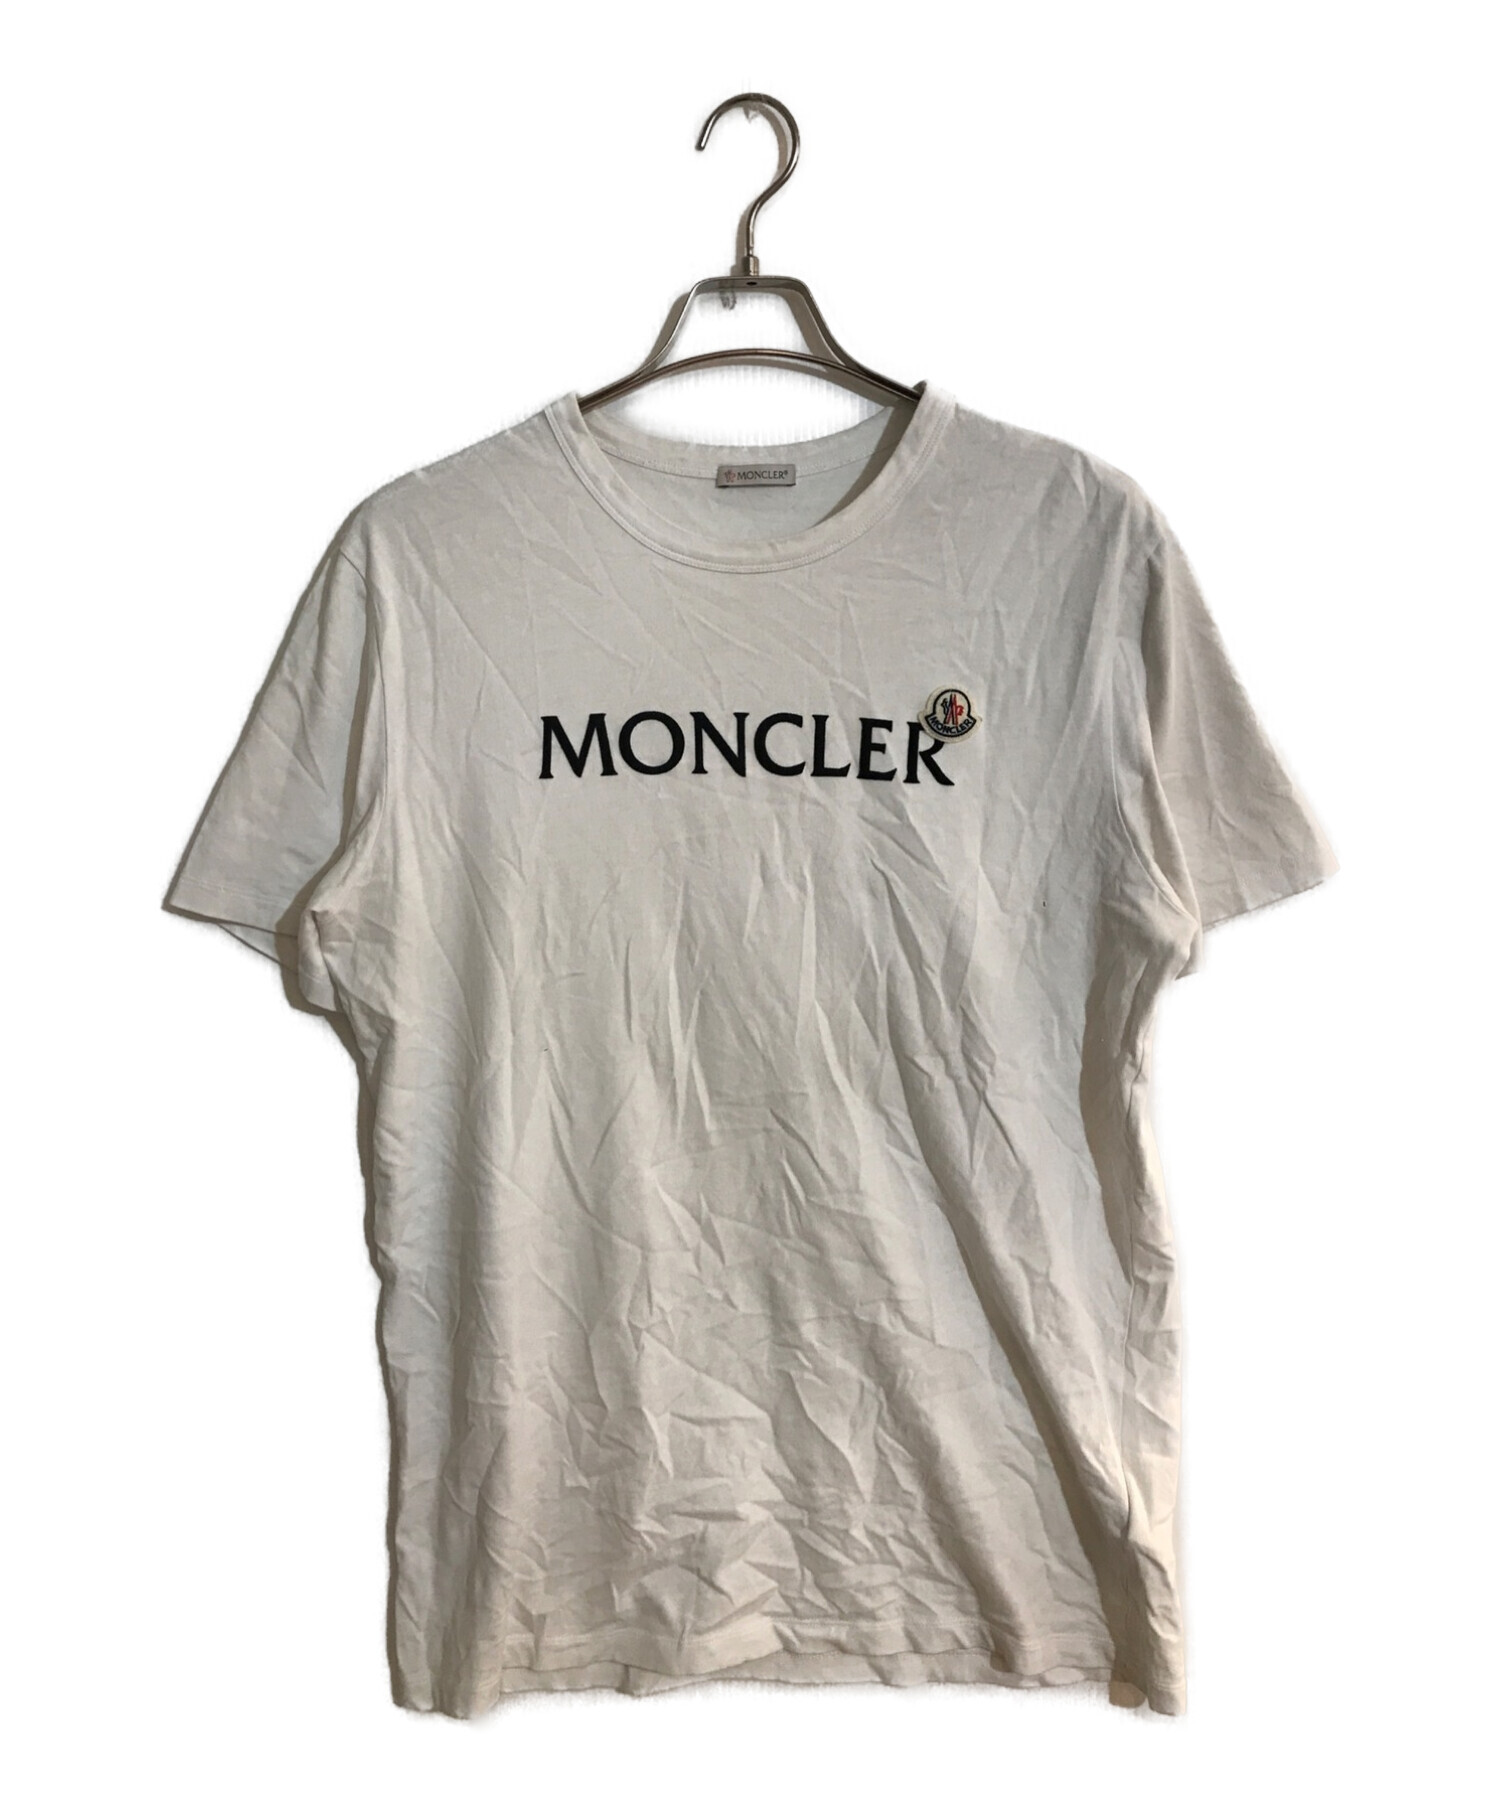 モンクレール MONCLER Tシャツ Lサイズkz_MONCLER